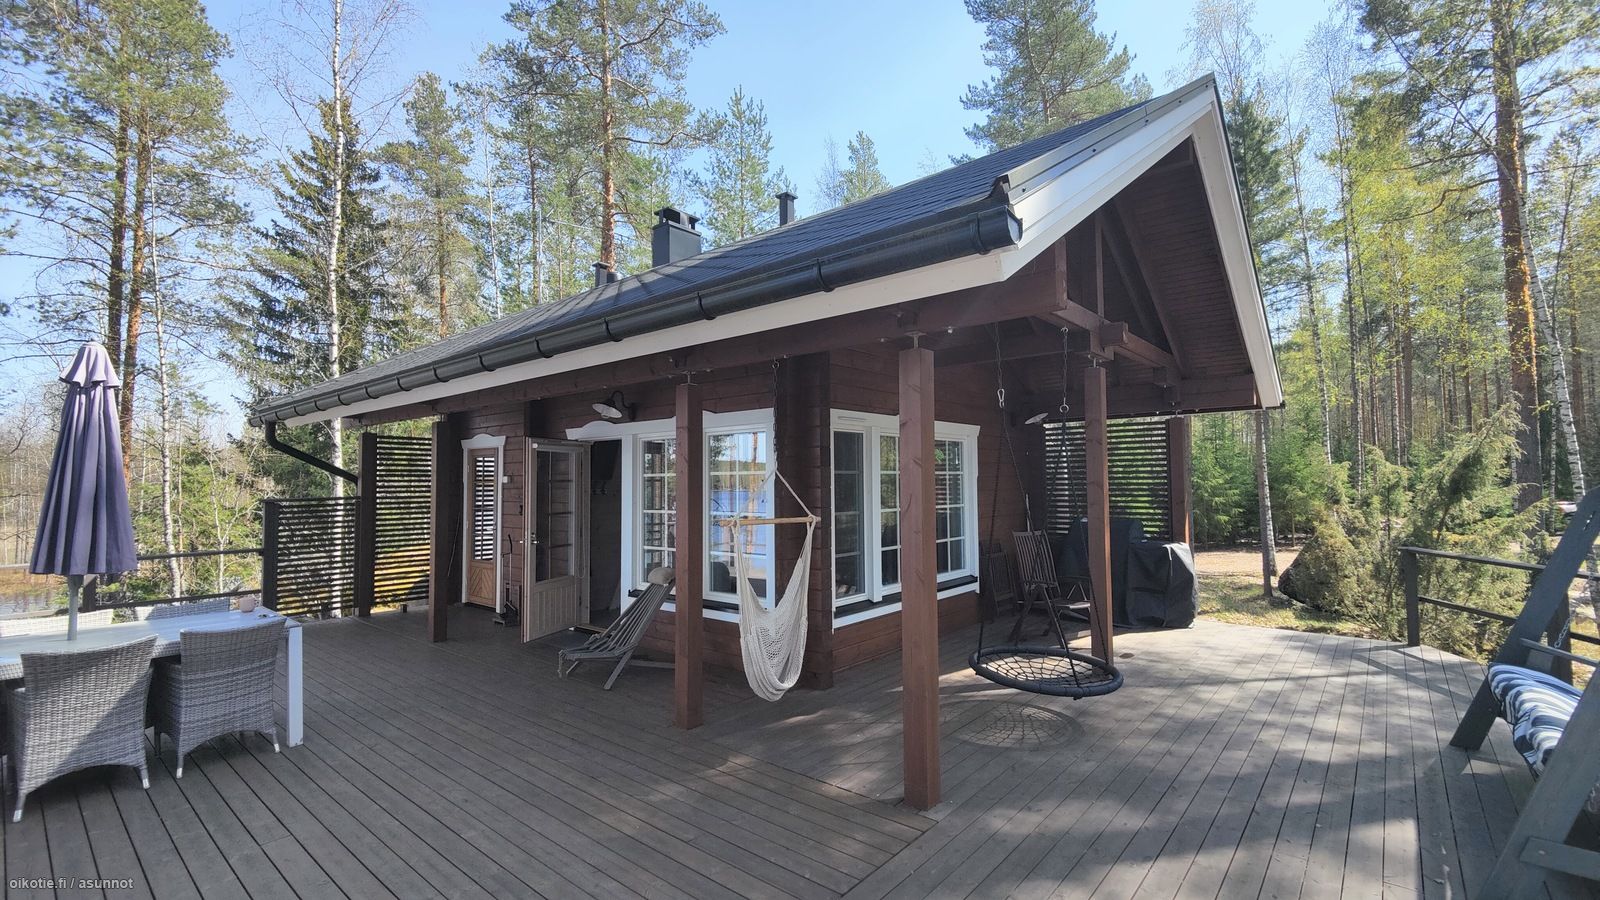 29 m² Sorsansalmi 52, 46530 Luumäki Tupakeittiö, pesuhuone, sauna, parvi –  Oikotie 17286593 – SKVL